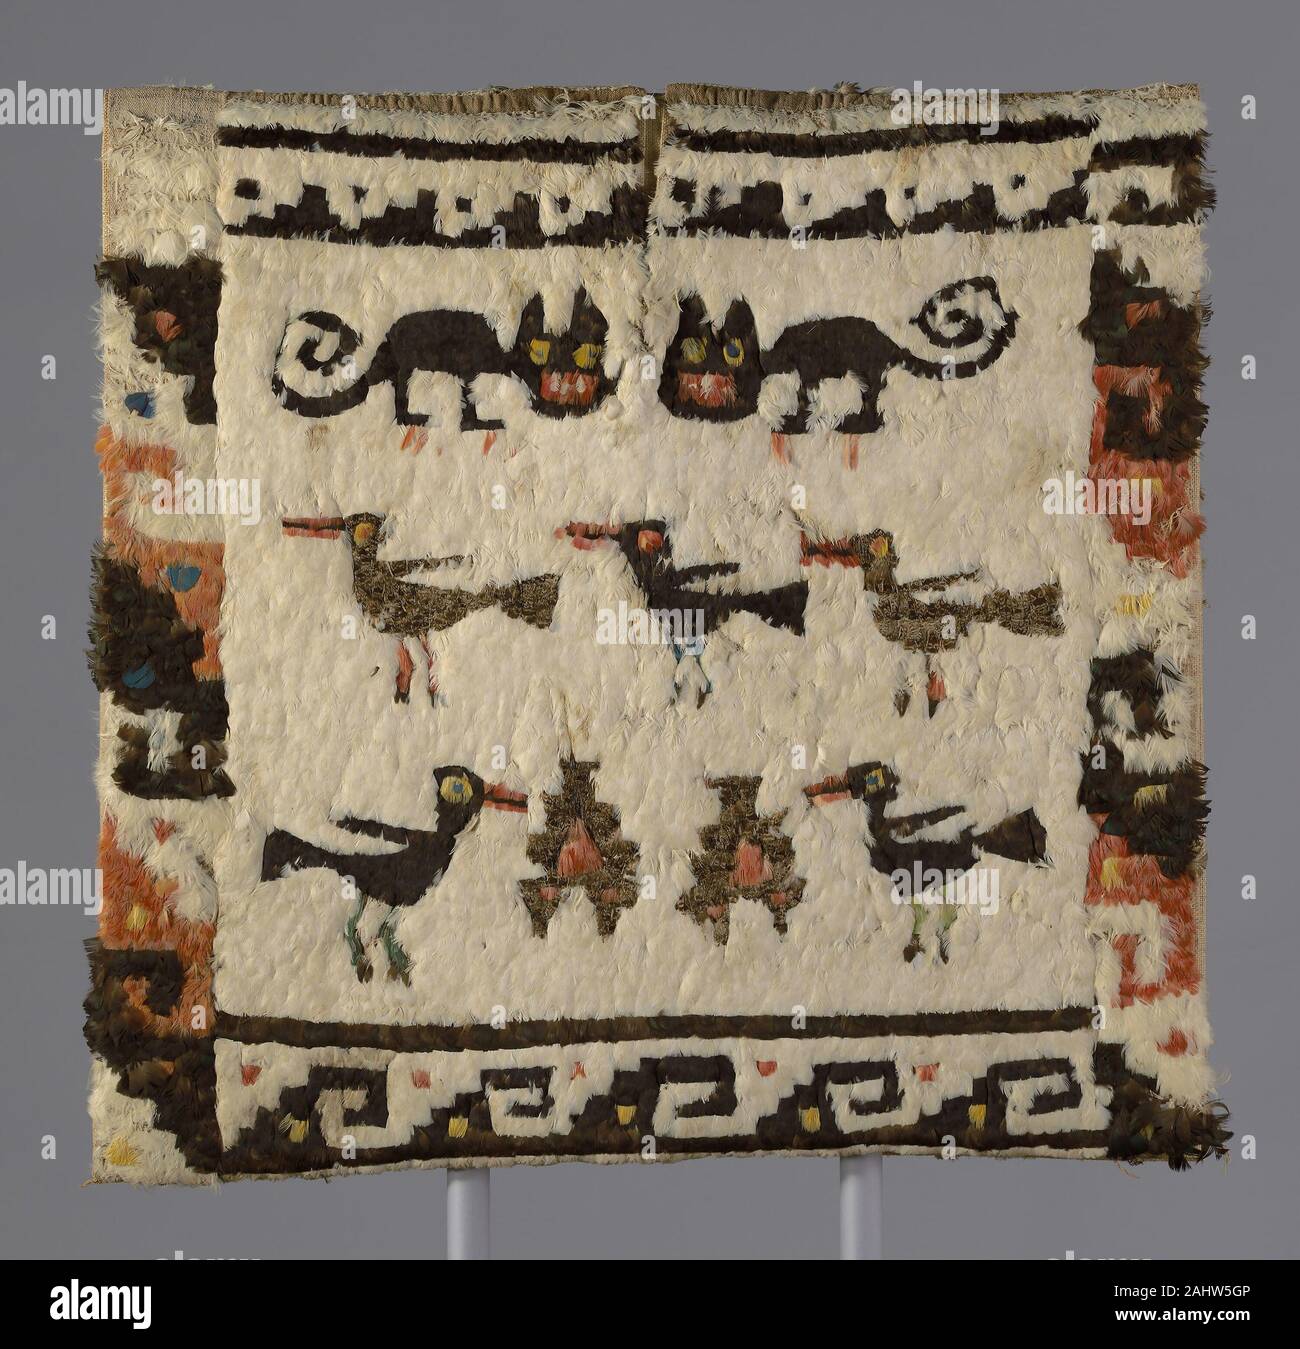 Chimú. Tunique à plumes. 1470-1532. Le Pérou. Du coton, à armure toile, ornée de plumes nouées et attaché avec du coton par temps couvert de suture l'un des plus extraordinaires travaille à l'Institut d'art collection de textiles archéologiques, cette tunique à plumes a été créé par des tisserands Chimú dans le nord du Pérou en 1470/1532. Le genou-longueur, sans manches vêtement est composé d'un tissu en coton doux complètement caché par des milliers de plumes de couleur vive. Ces panaches convoité ont été prises à partir de aras, perroquets, toucans, cotingas, et tangaras de les forêts tropicales de l'Amérique du Sud. Parce que le Banque D'Images